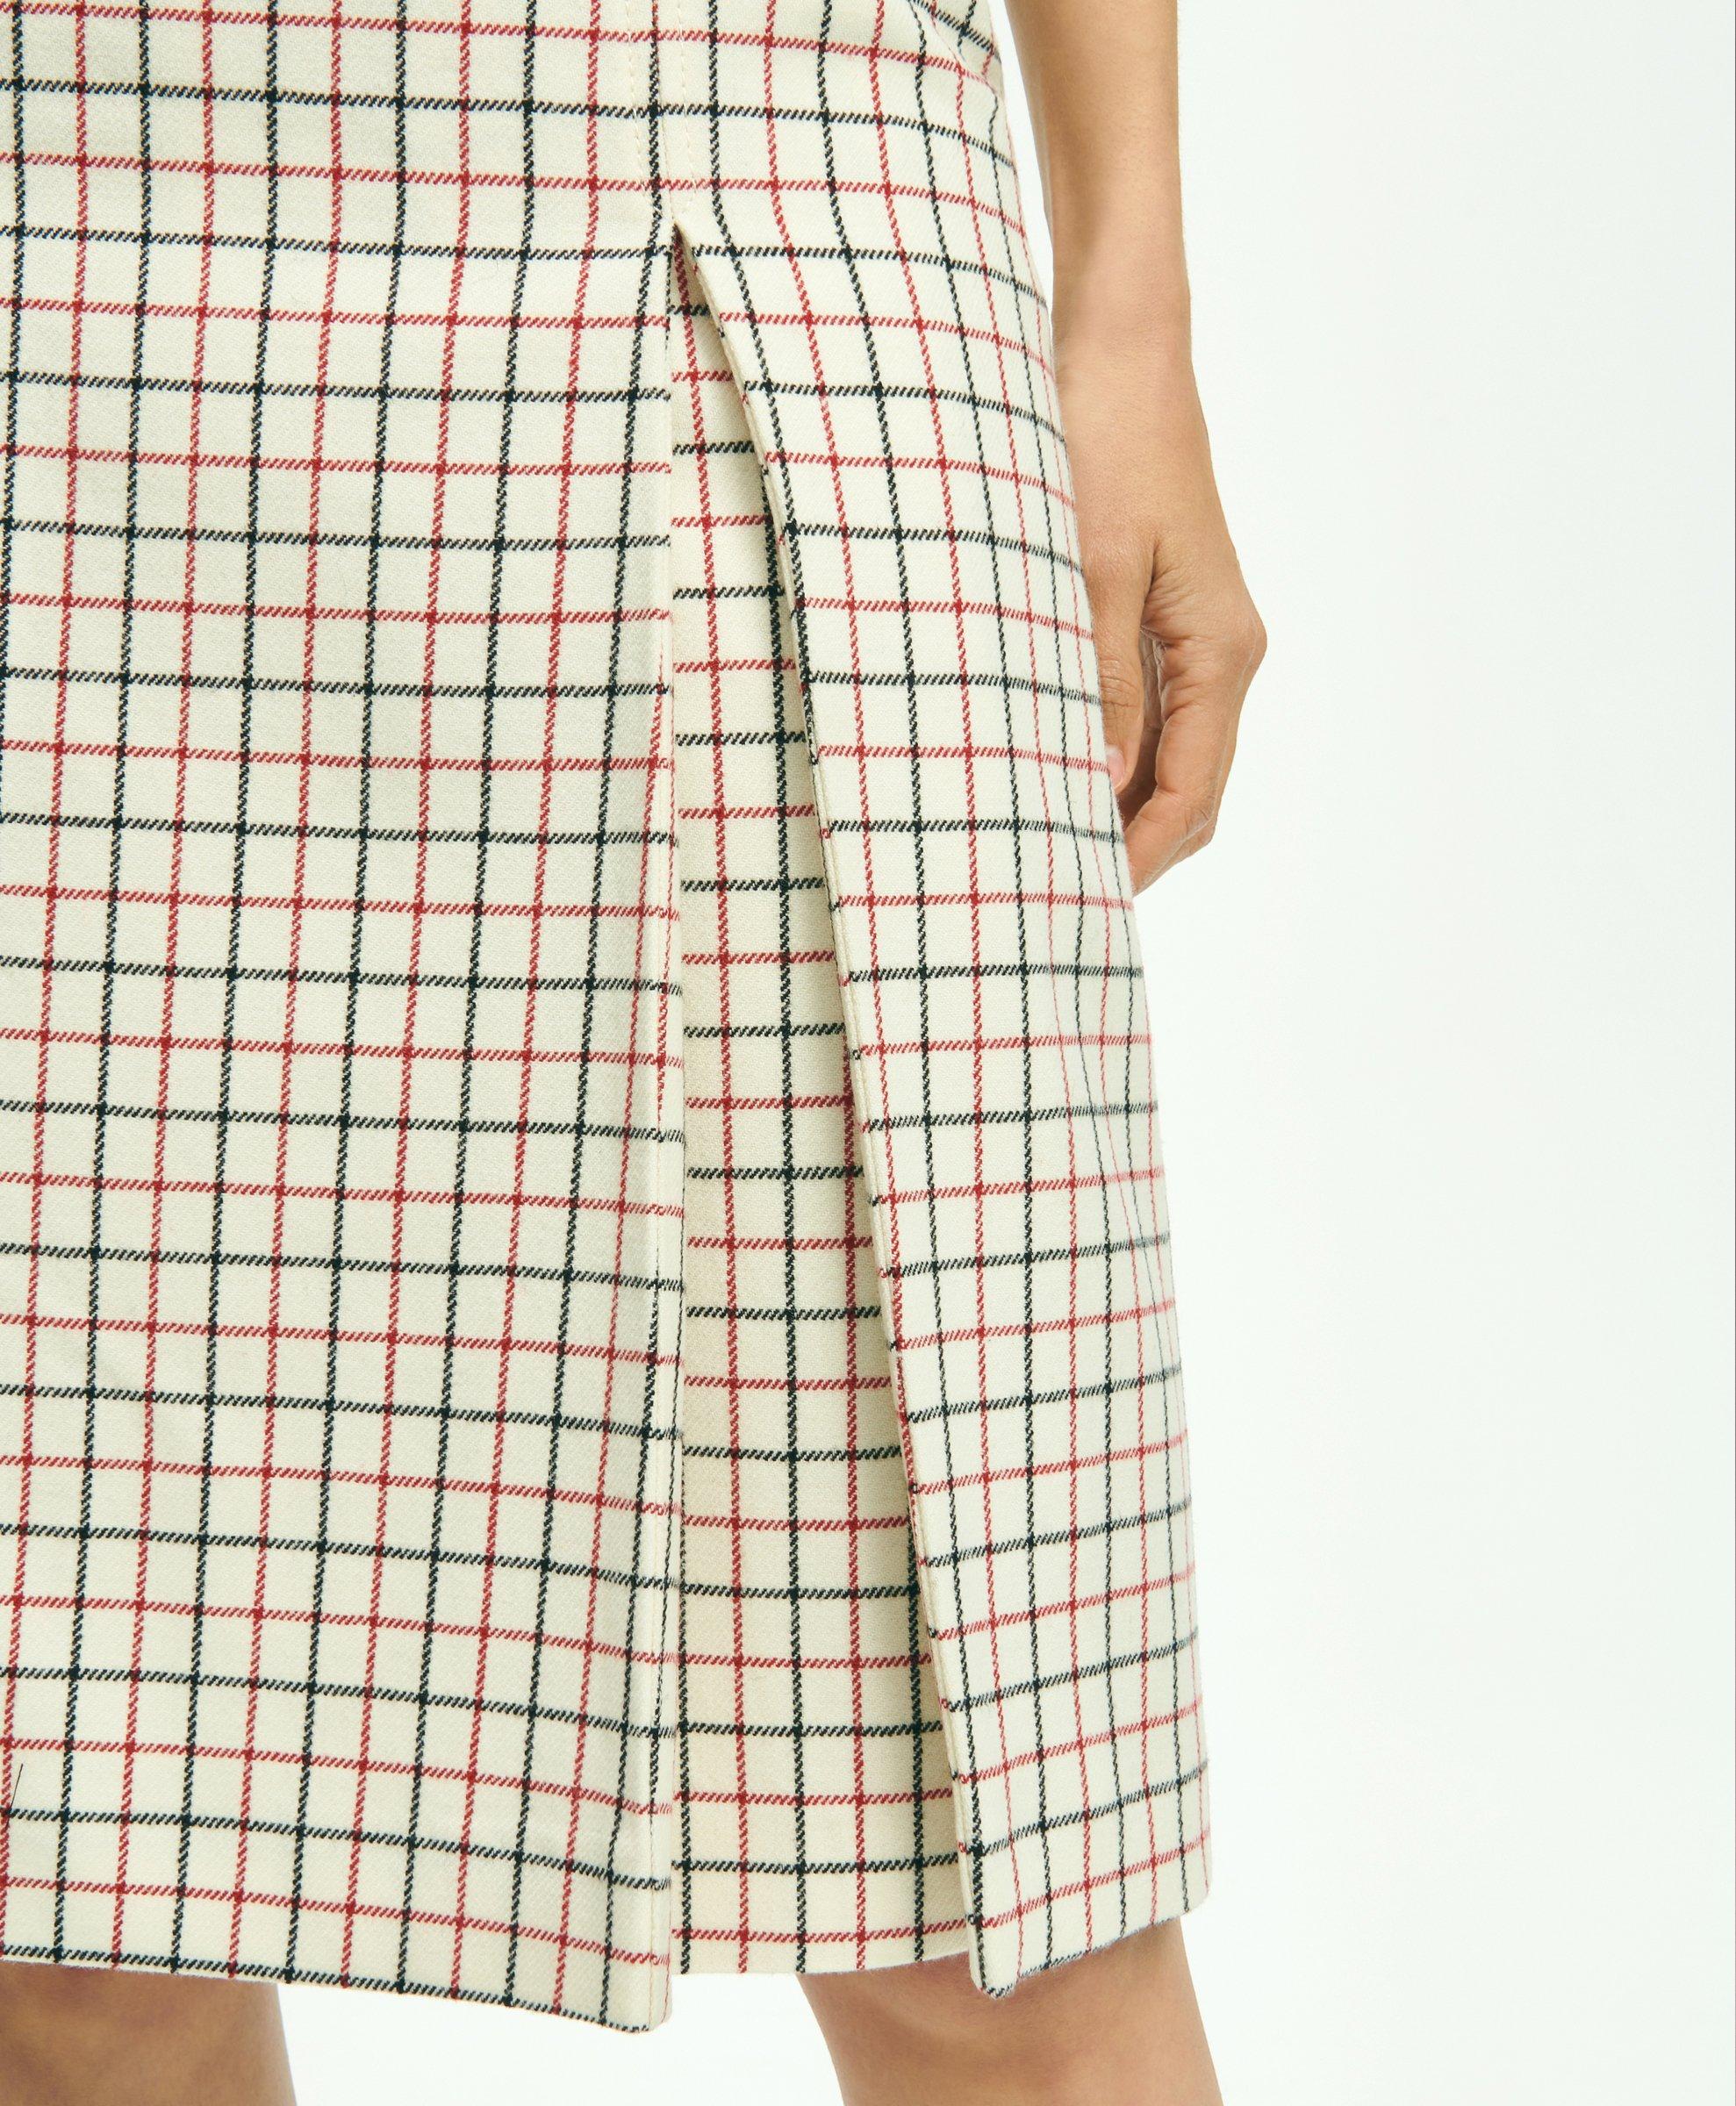 Linen Box Pleat Skirt – Ann Gish